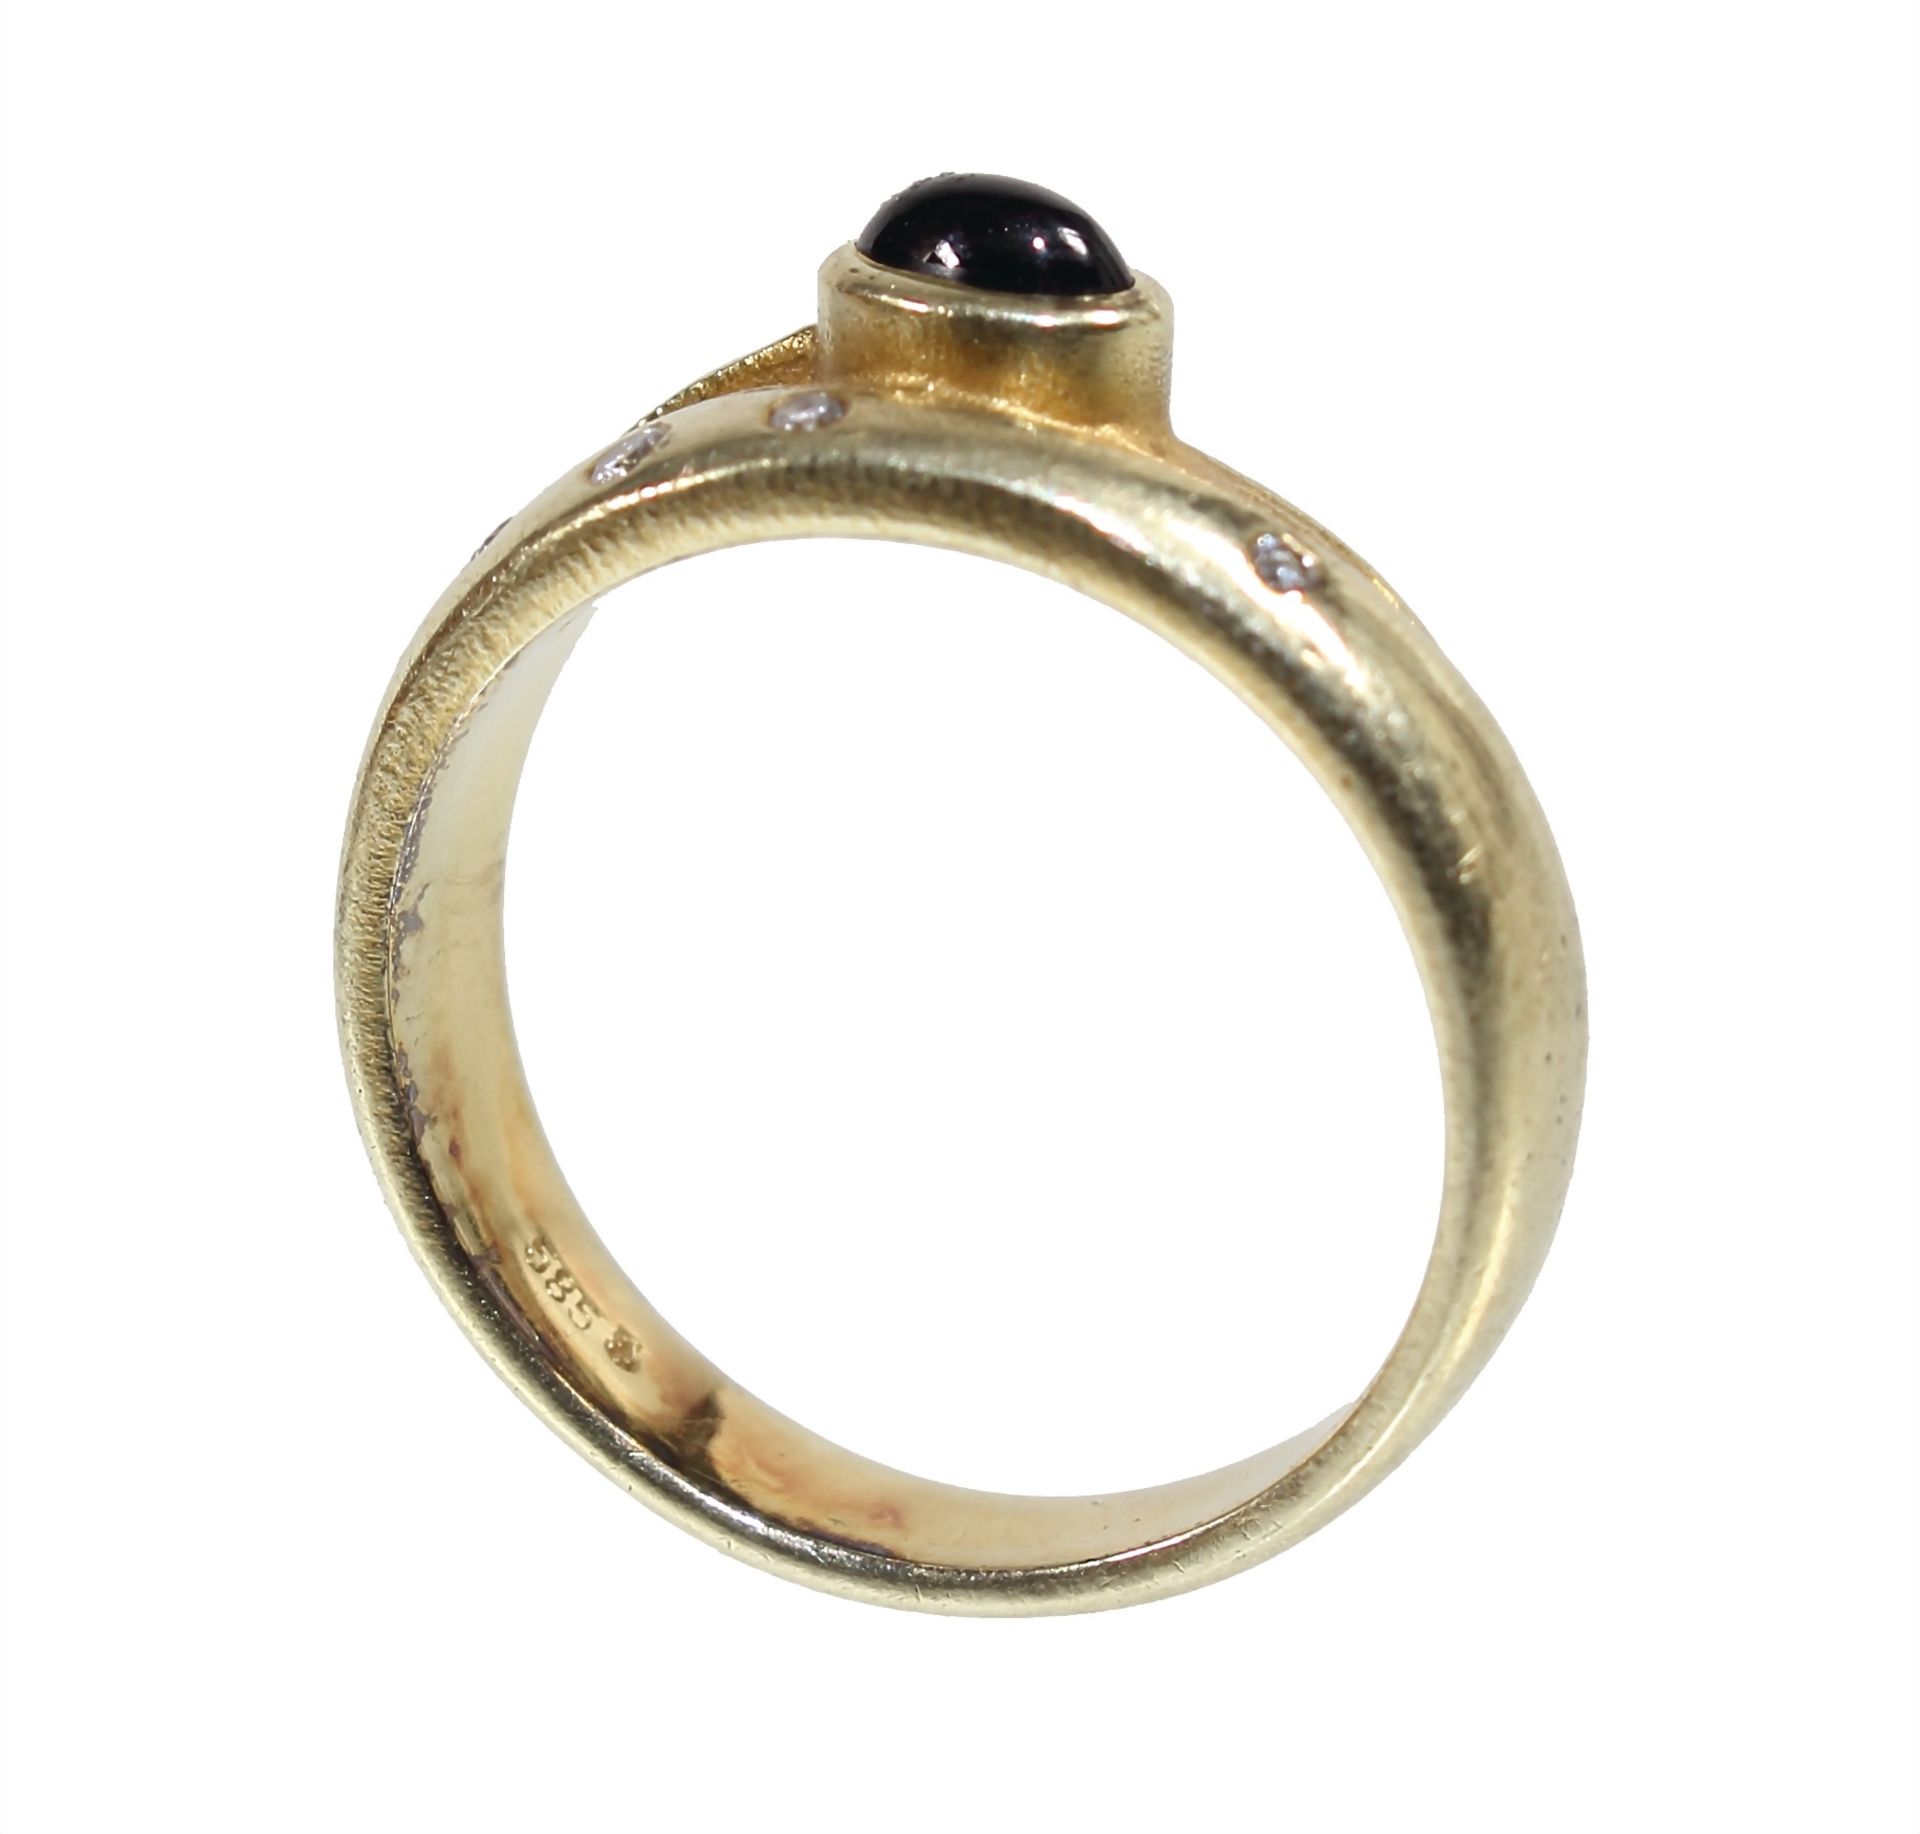 Ring, GG 585/000, 1 Saphir-Cabochon, 4 Brillanten ca. 0,04 ct tw/w-vsi, RW ca. 54,0 - Bild 4 aus 4